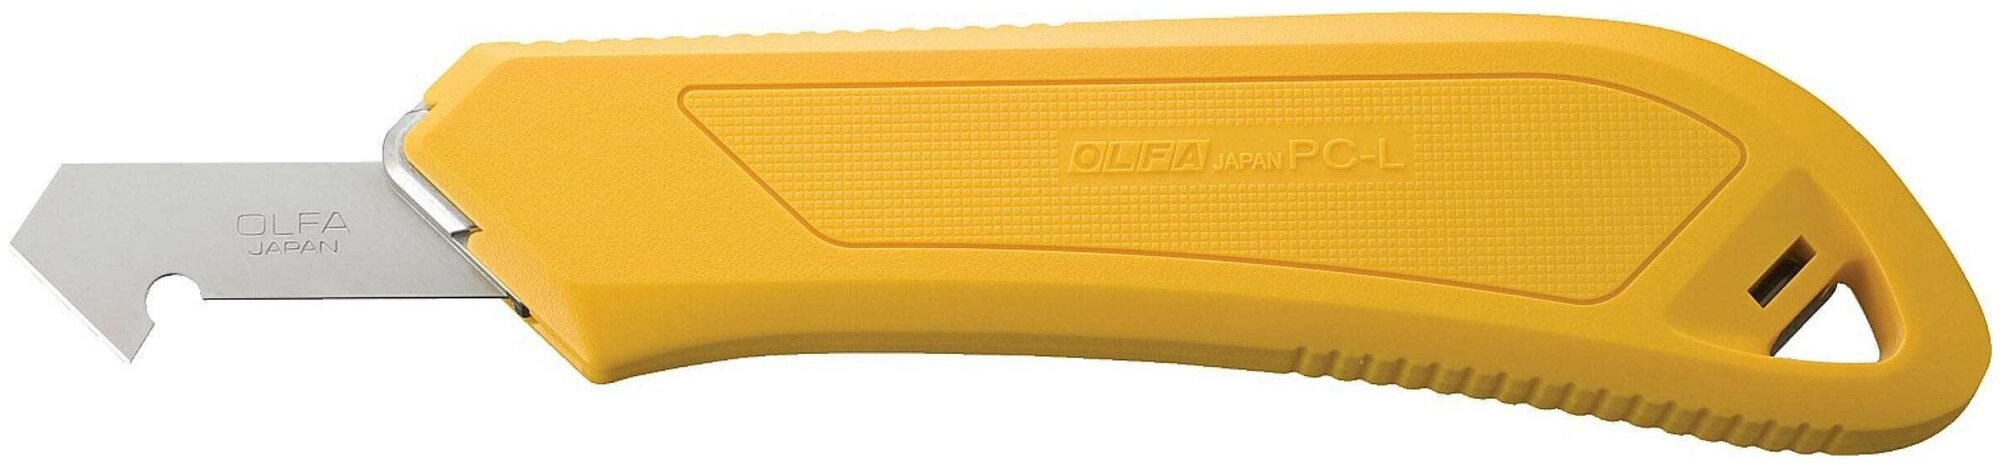 Усиленный резак OLFA OL-PC-L, для пластика 13 мм